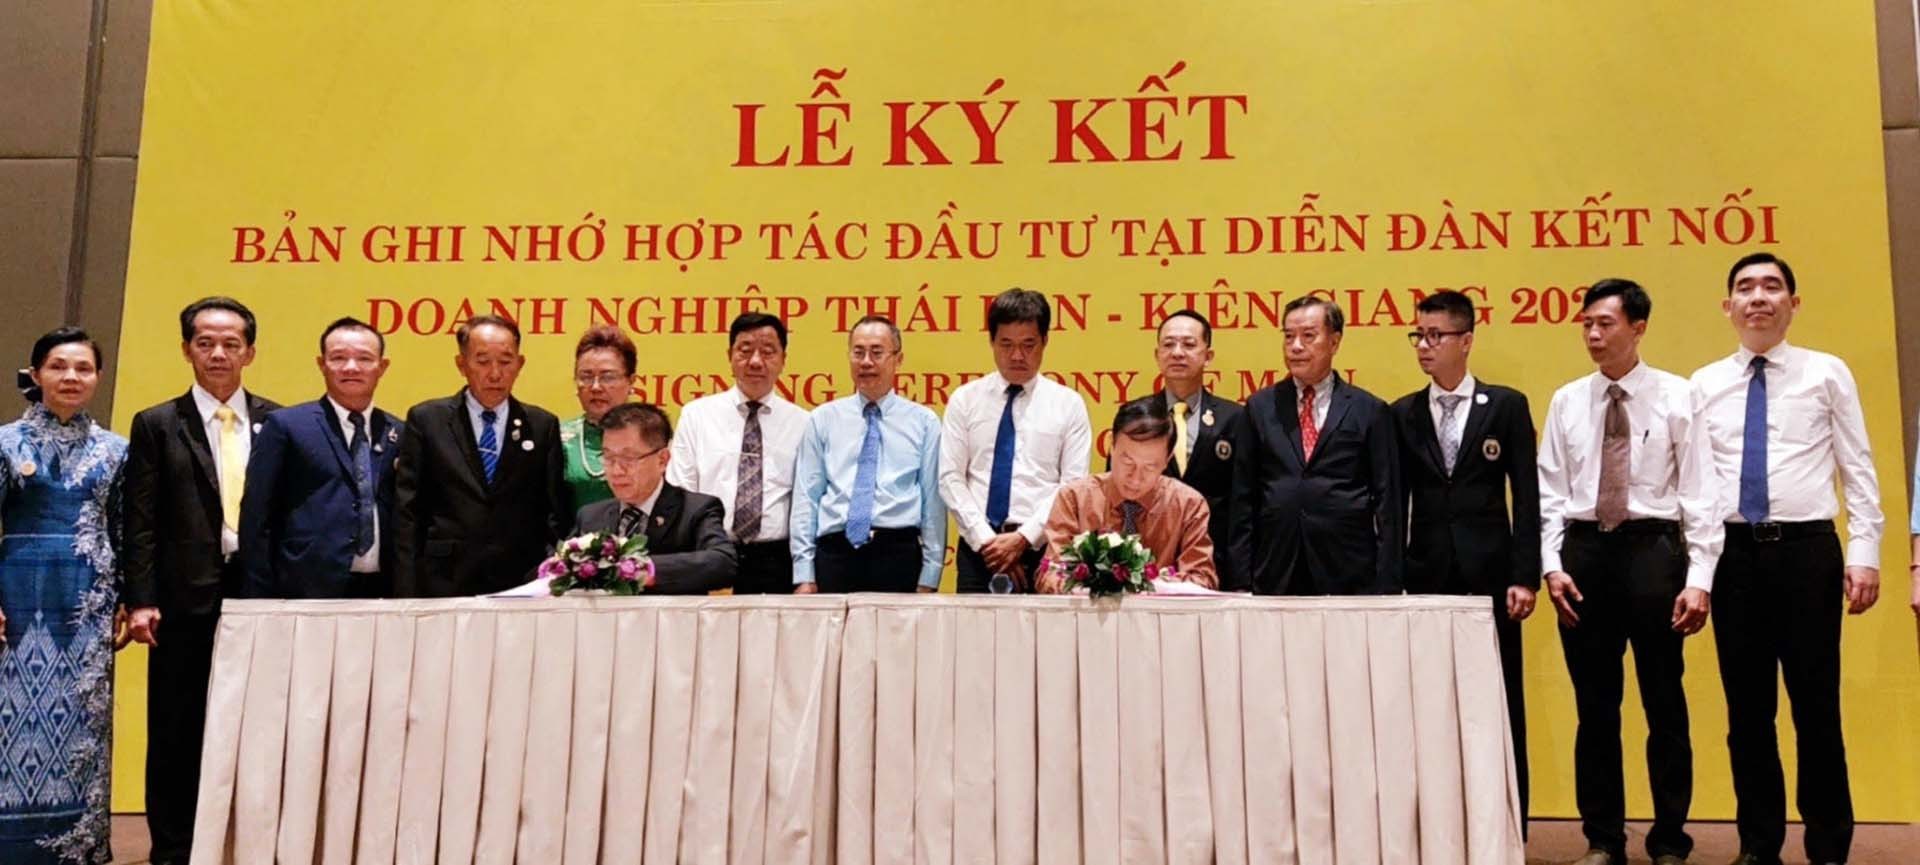 Ký kết Bản ghi nhớ hợp tác giữa doanh nghiệp kiều bào Việt Nam-Thái Lan.